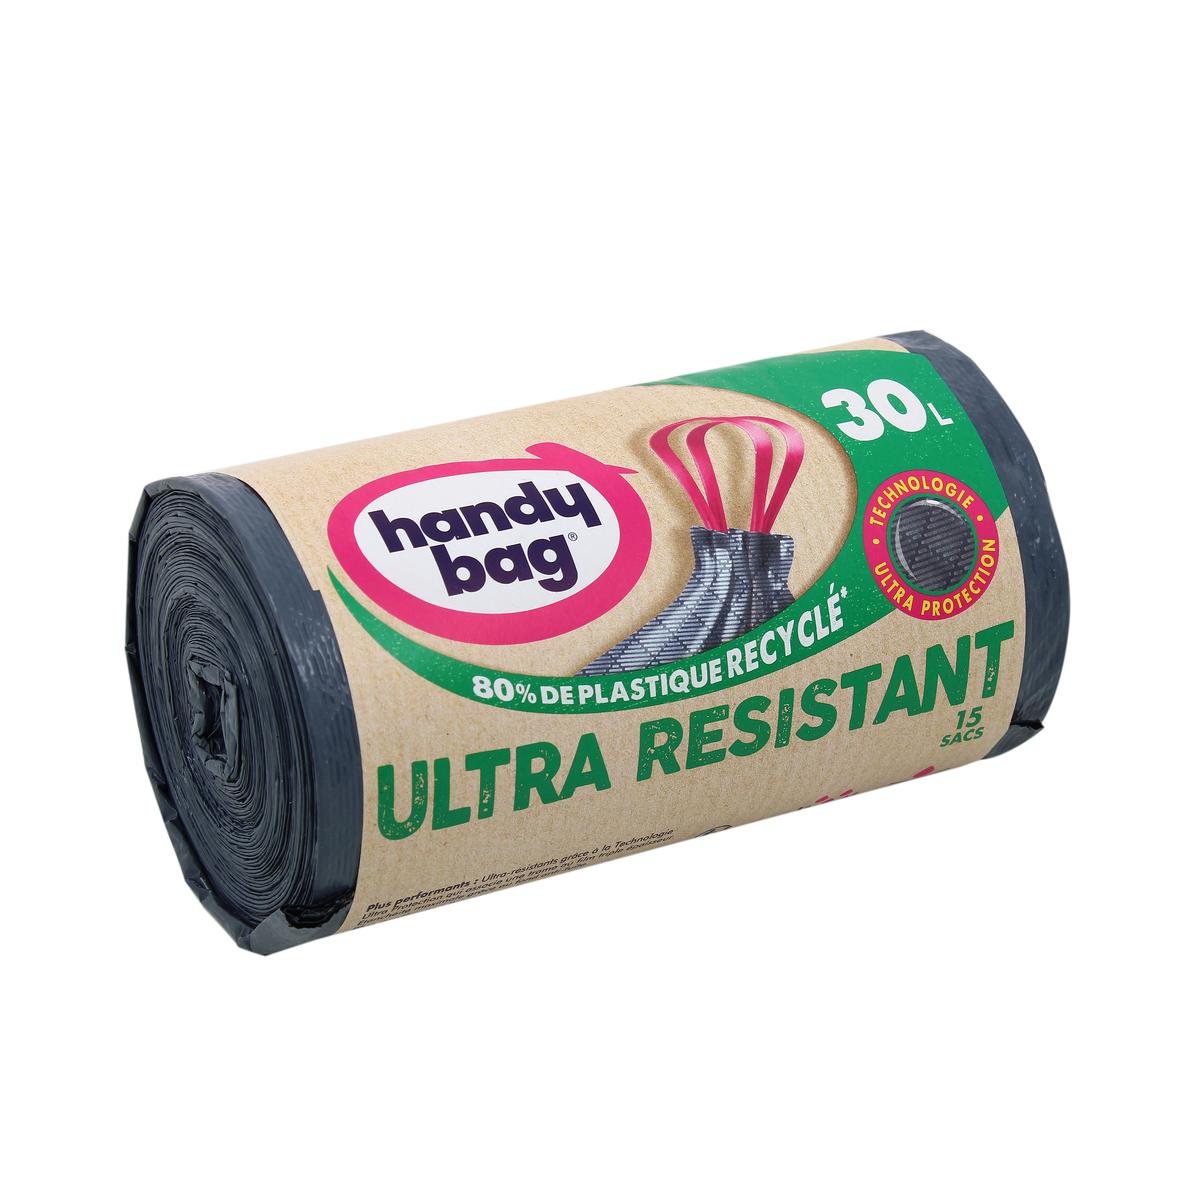 HANDY BAG : Ultra Résistant - Sacs poubelle à liens pratiques 30L